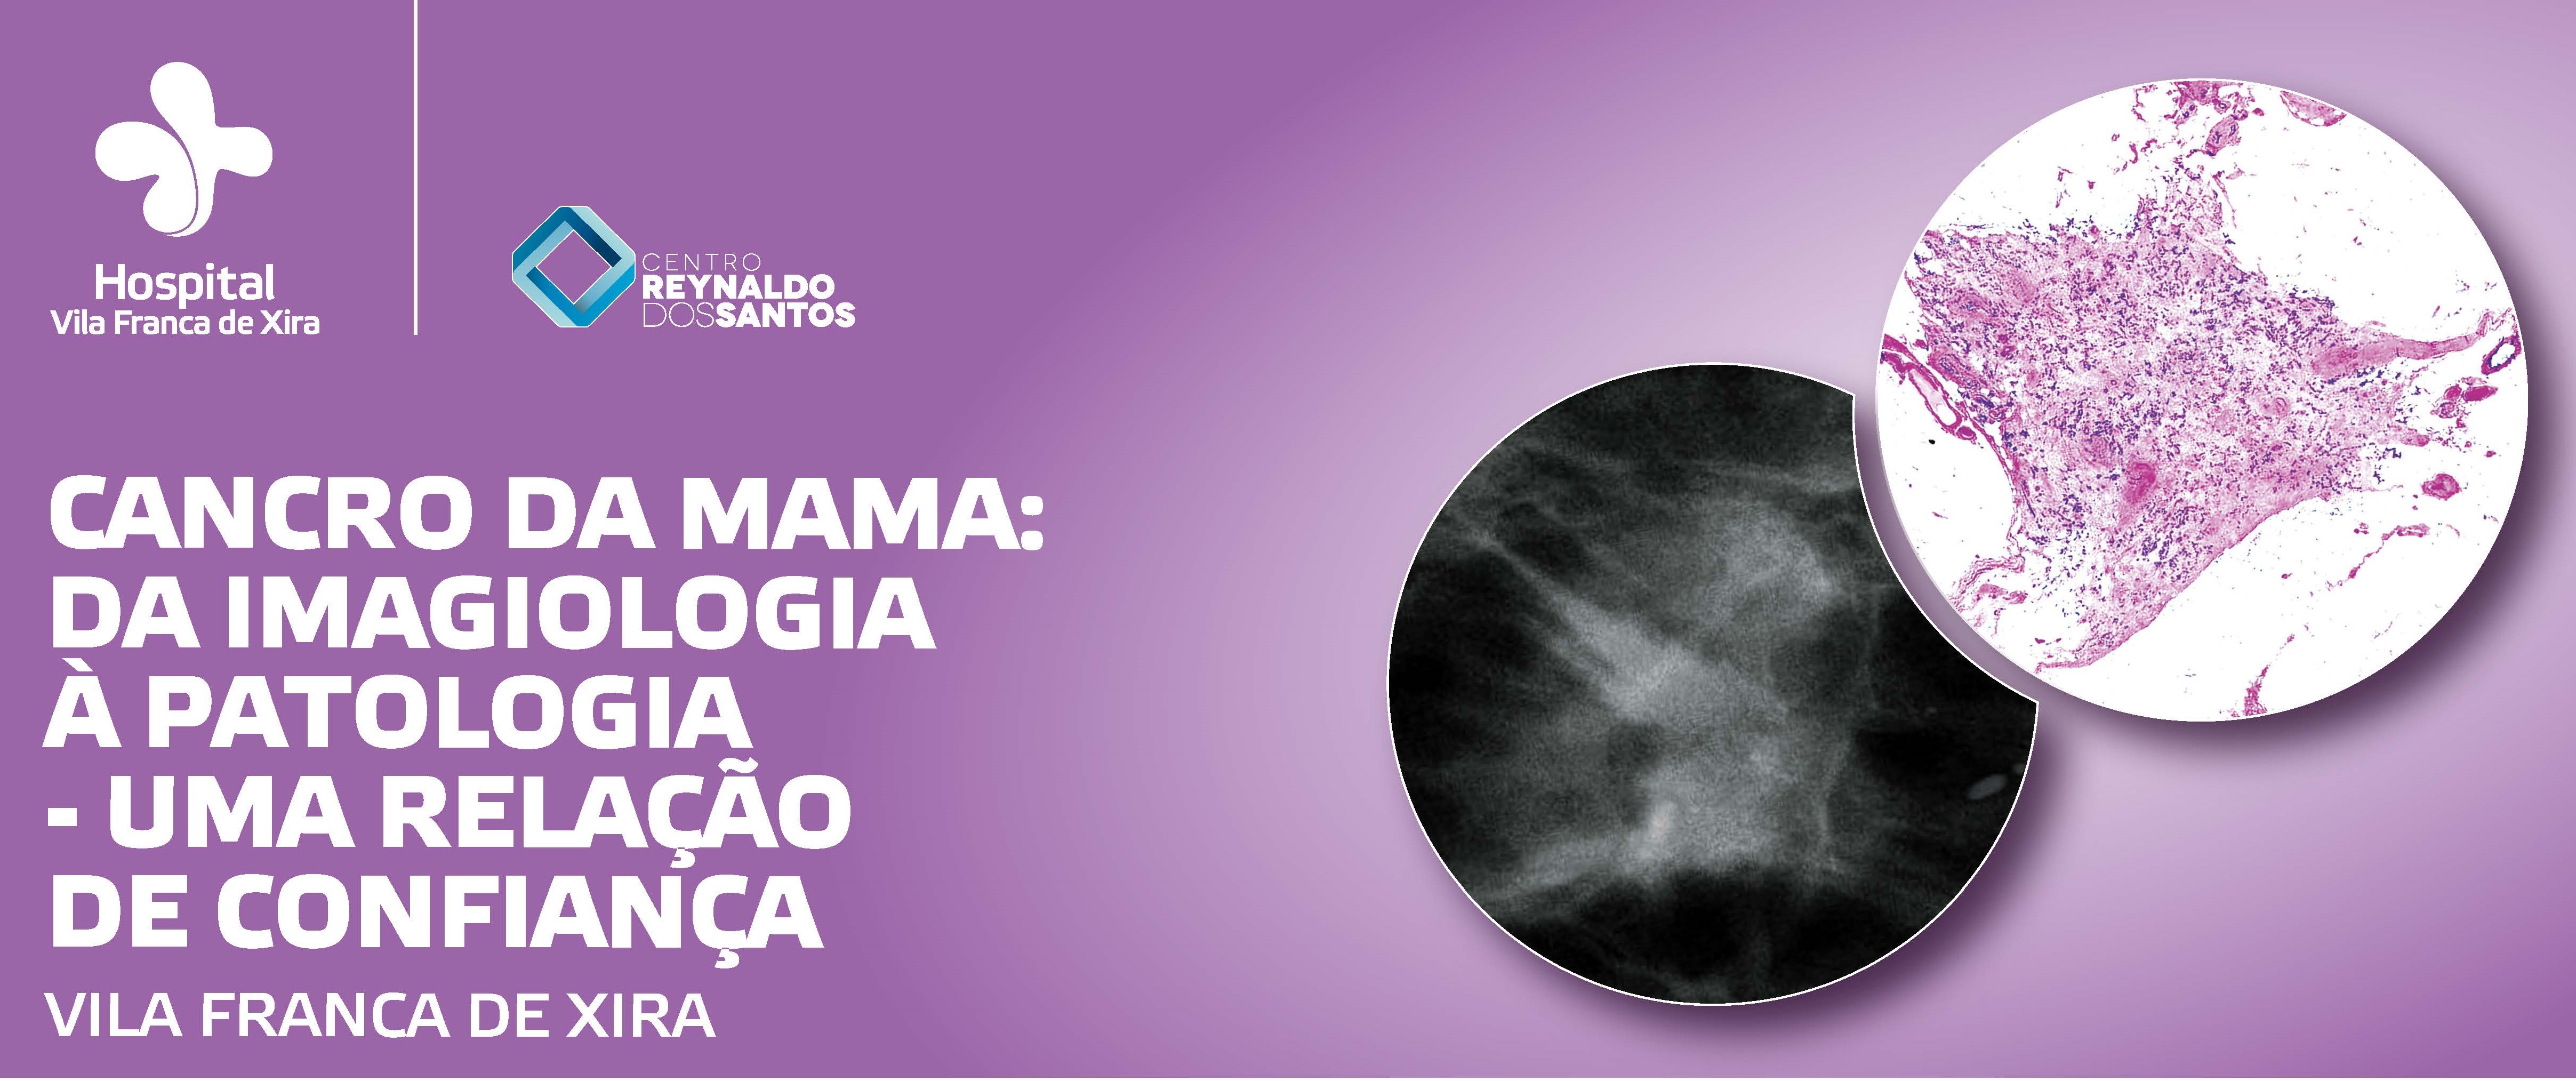 hospital-de-vila-franca-de-xira-Carcinoma da Mama: da imagiologia à anatomia patológica